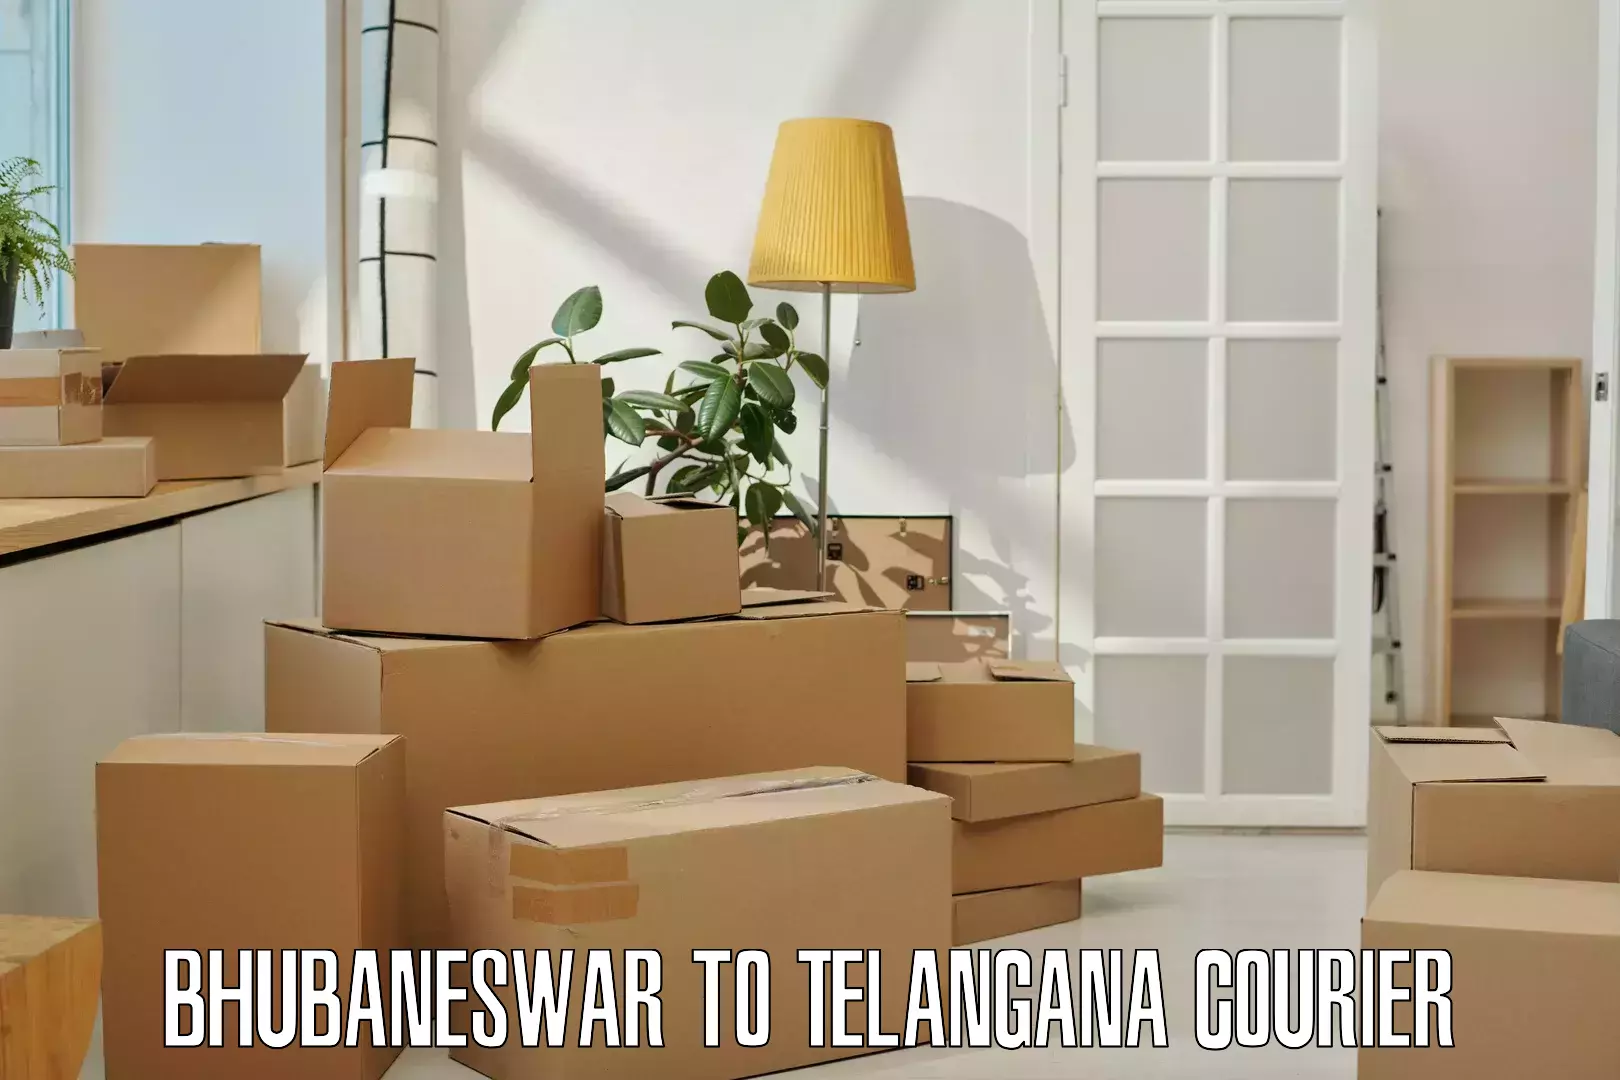 Express mail service Bhubaneswar to Telangana